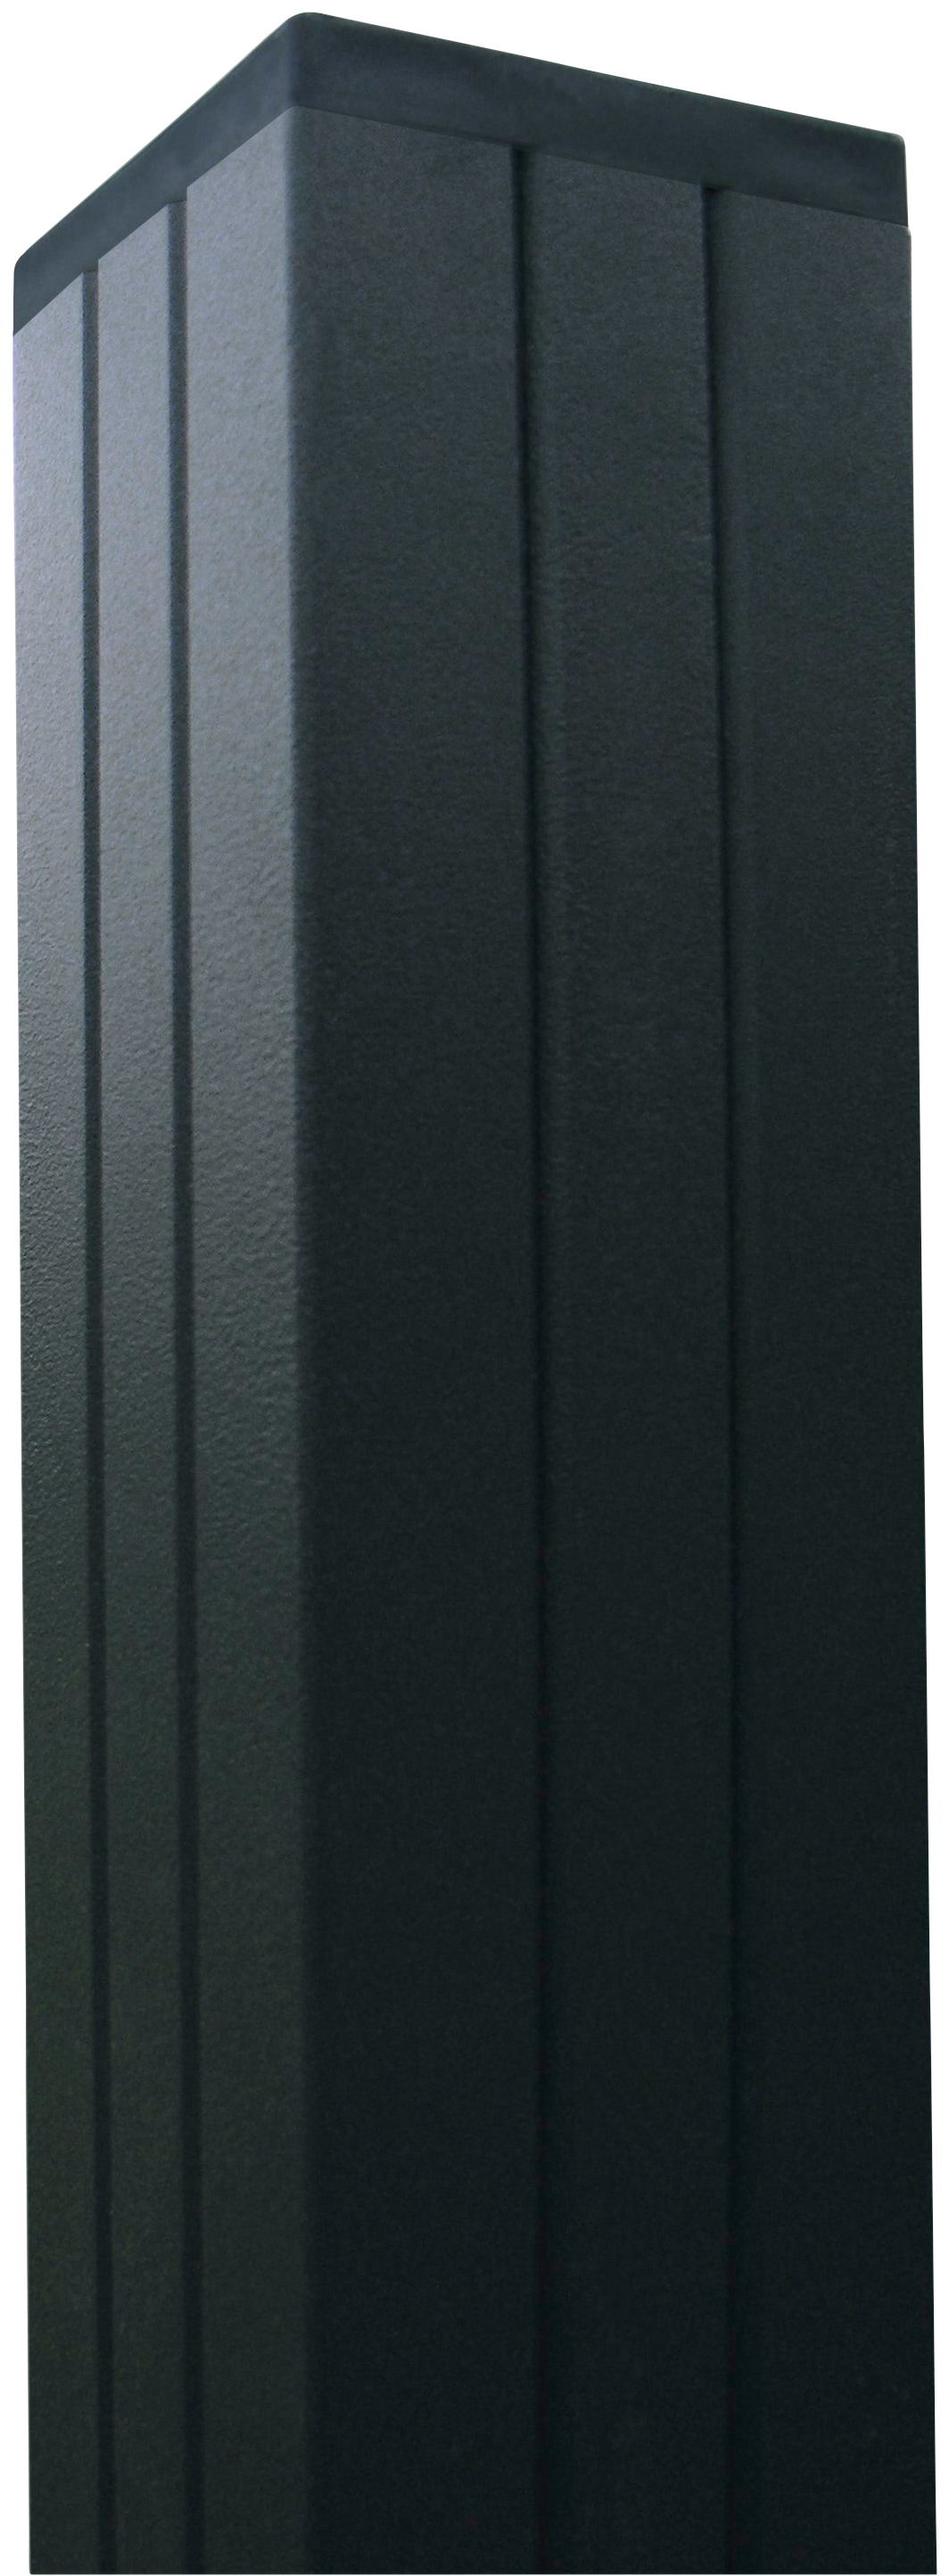 Kiehn-Holz Sichtschutzelement, LxH: 360x180 cm, Pfosten zum Einbetonieren